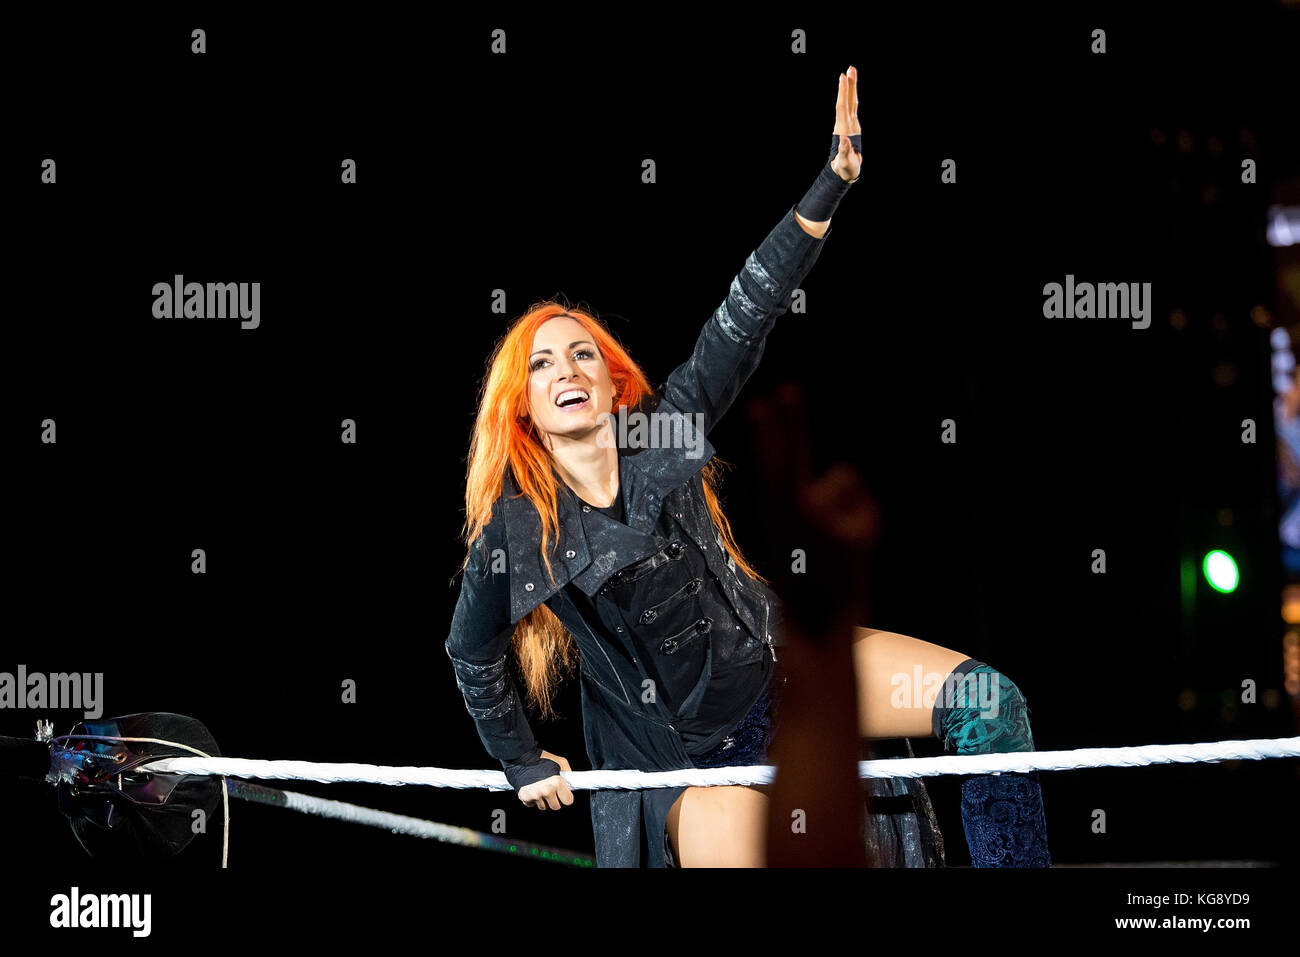 Barcellona - Nov 4: Il lottatore Becky Lynch in azione a WWE dal vivo presso il Palau Sant Jordi il 4 novembre 2017 a Barcellona, Spagna. Foto Stock